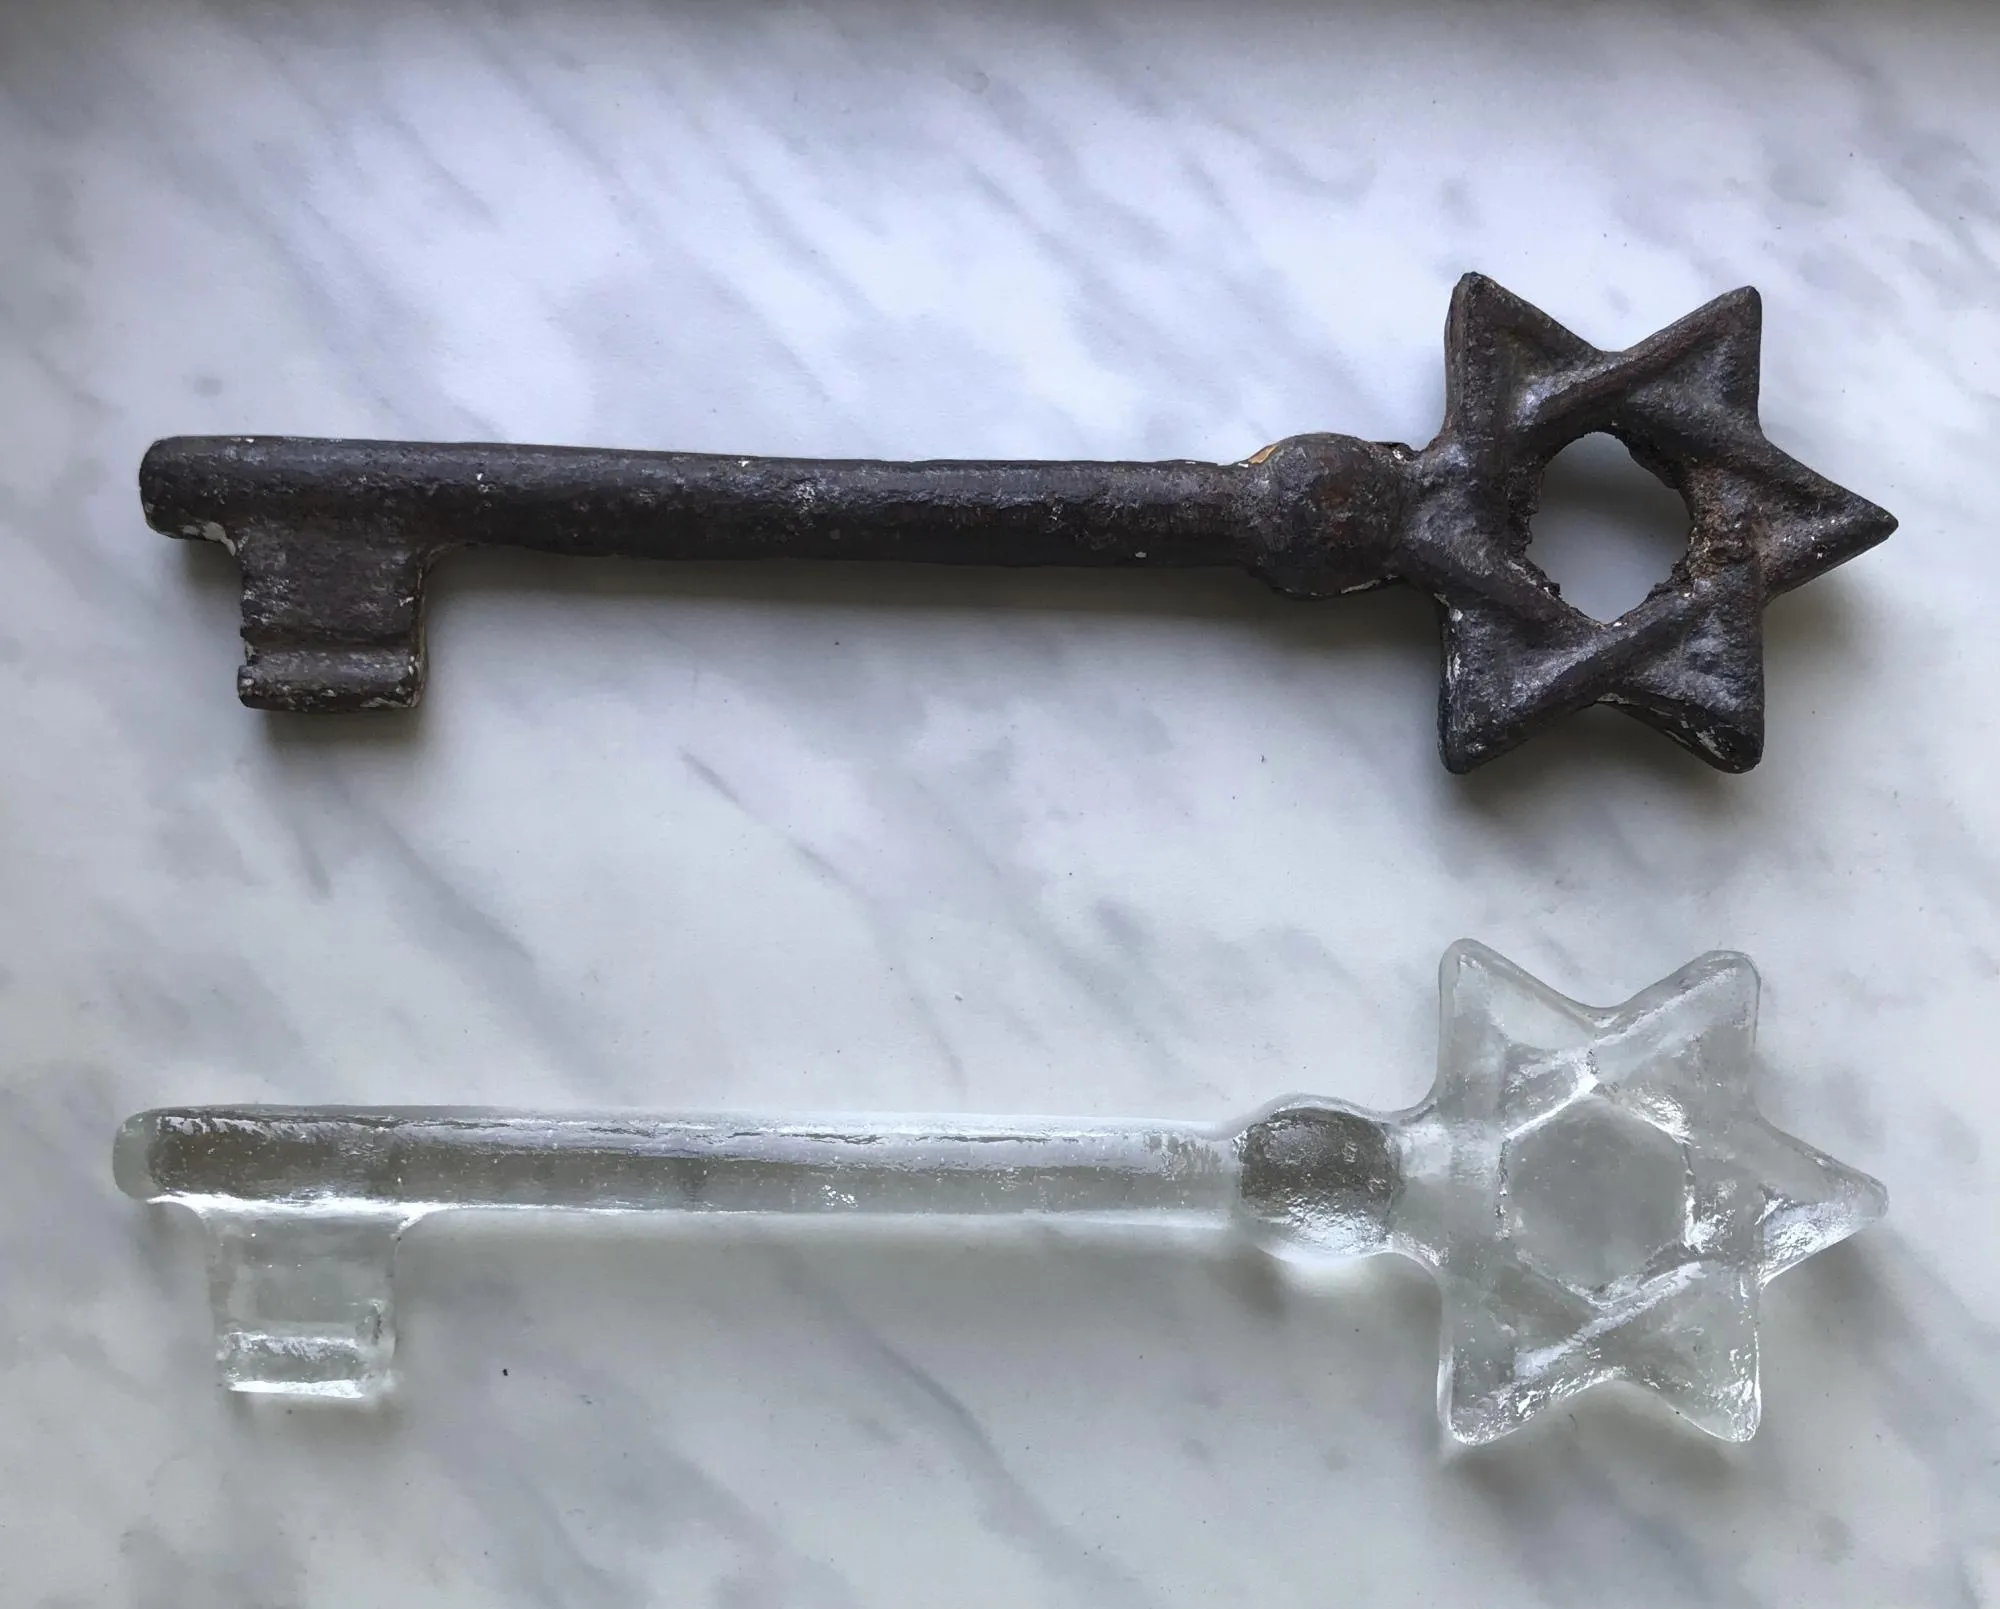 75 скляних копій металевого ключа були вручені людям, які працюють над збереженням пам'яті про єврейське населення Львова та регіону 